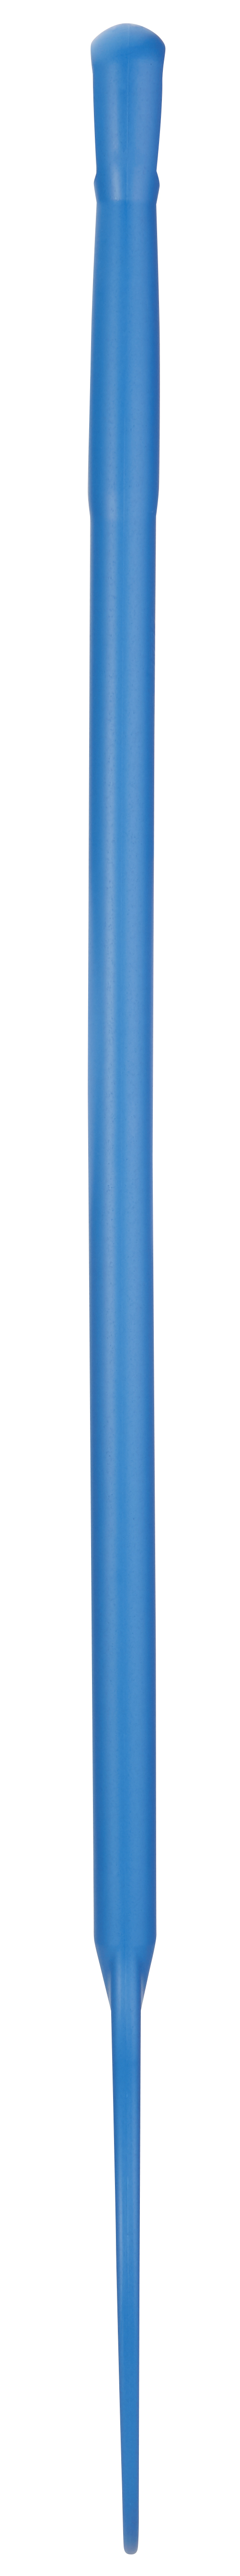 Мешалка Vikan перфорированная металлодетектируемая, 1200 мм, синяя